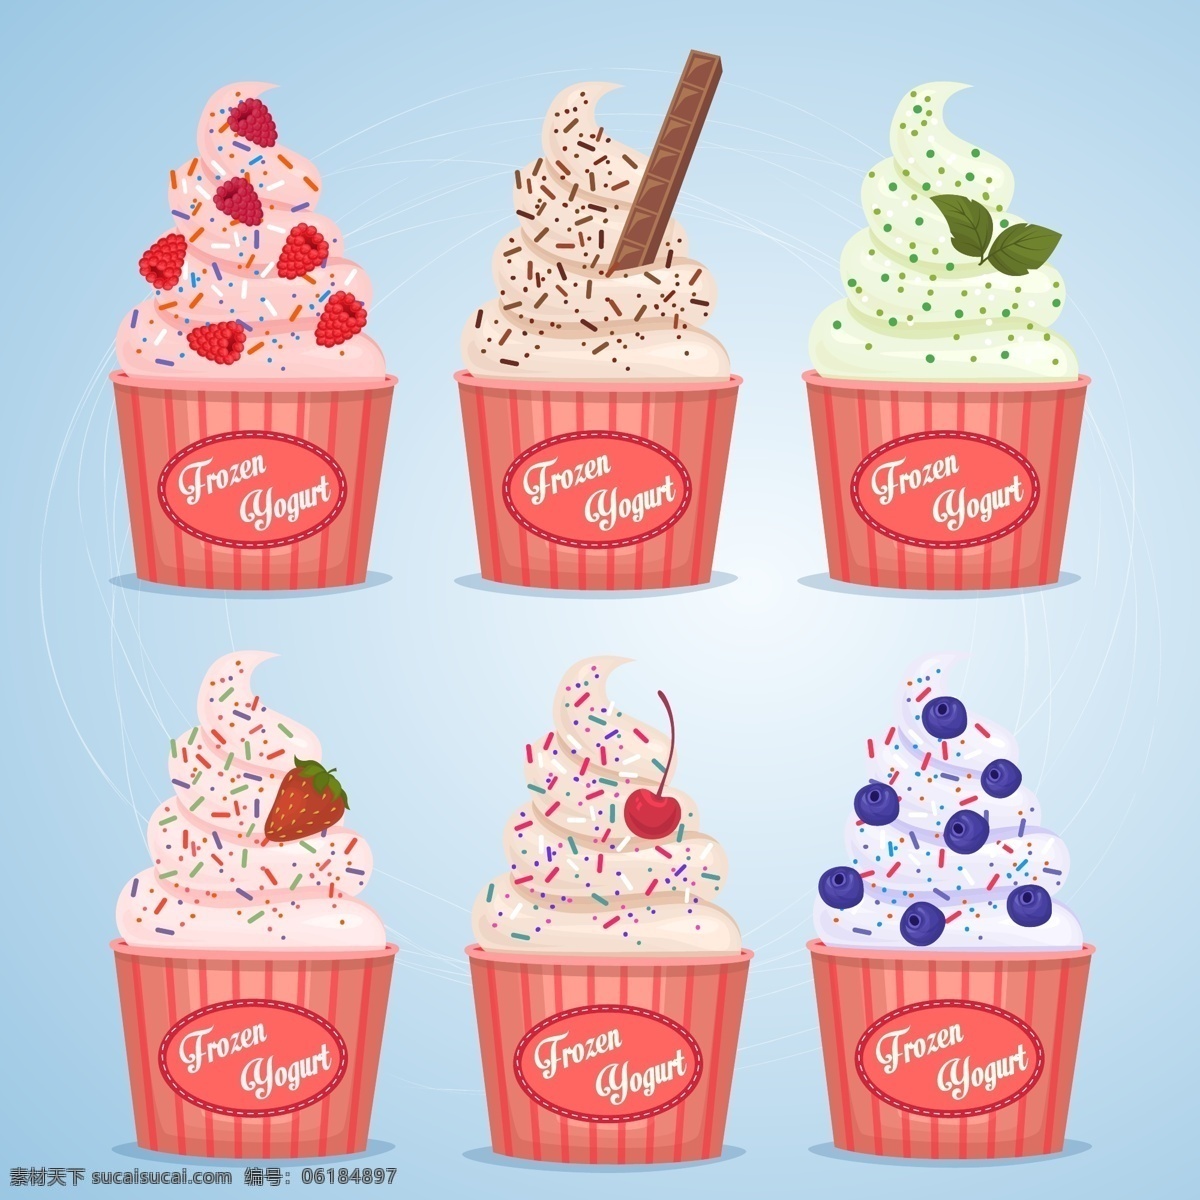 美味 水果 冰淇淋 插画 甜品 草莓 巧克力 蓝莓 樱桃